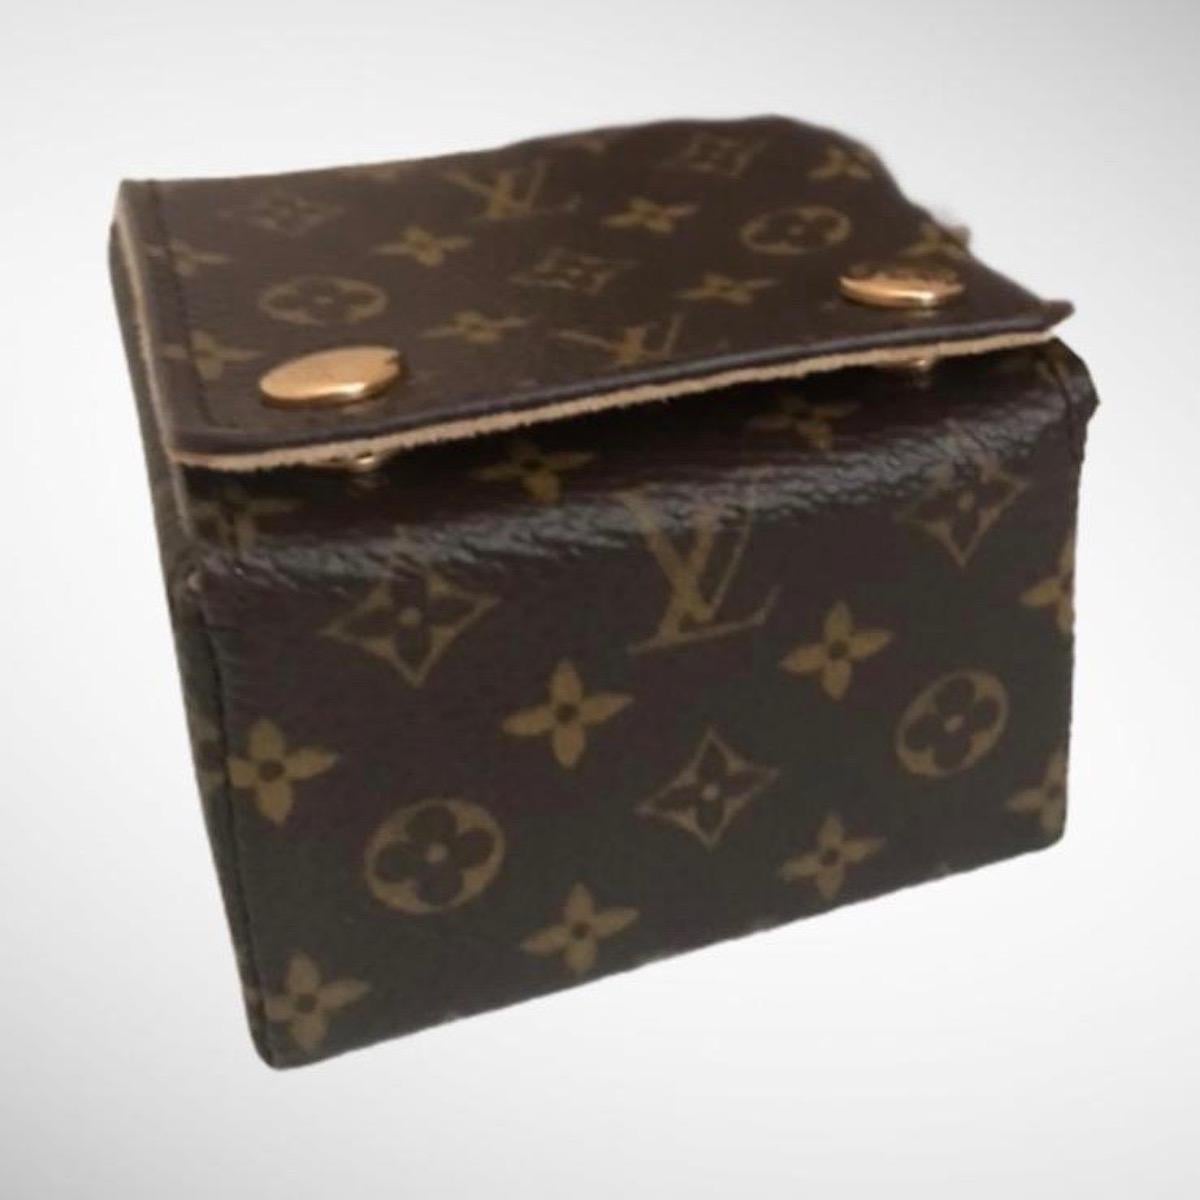 Louis Vuitton Padlock Key Onyx Bag Yellow Gold Charm Link Bracelet 1